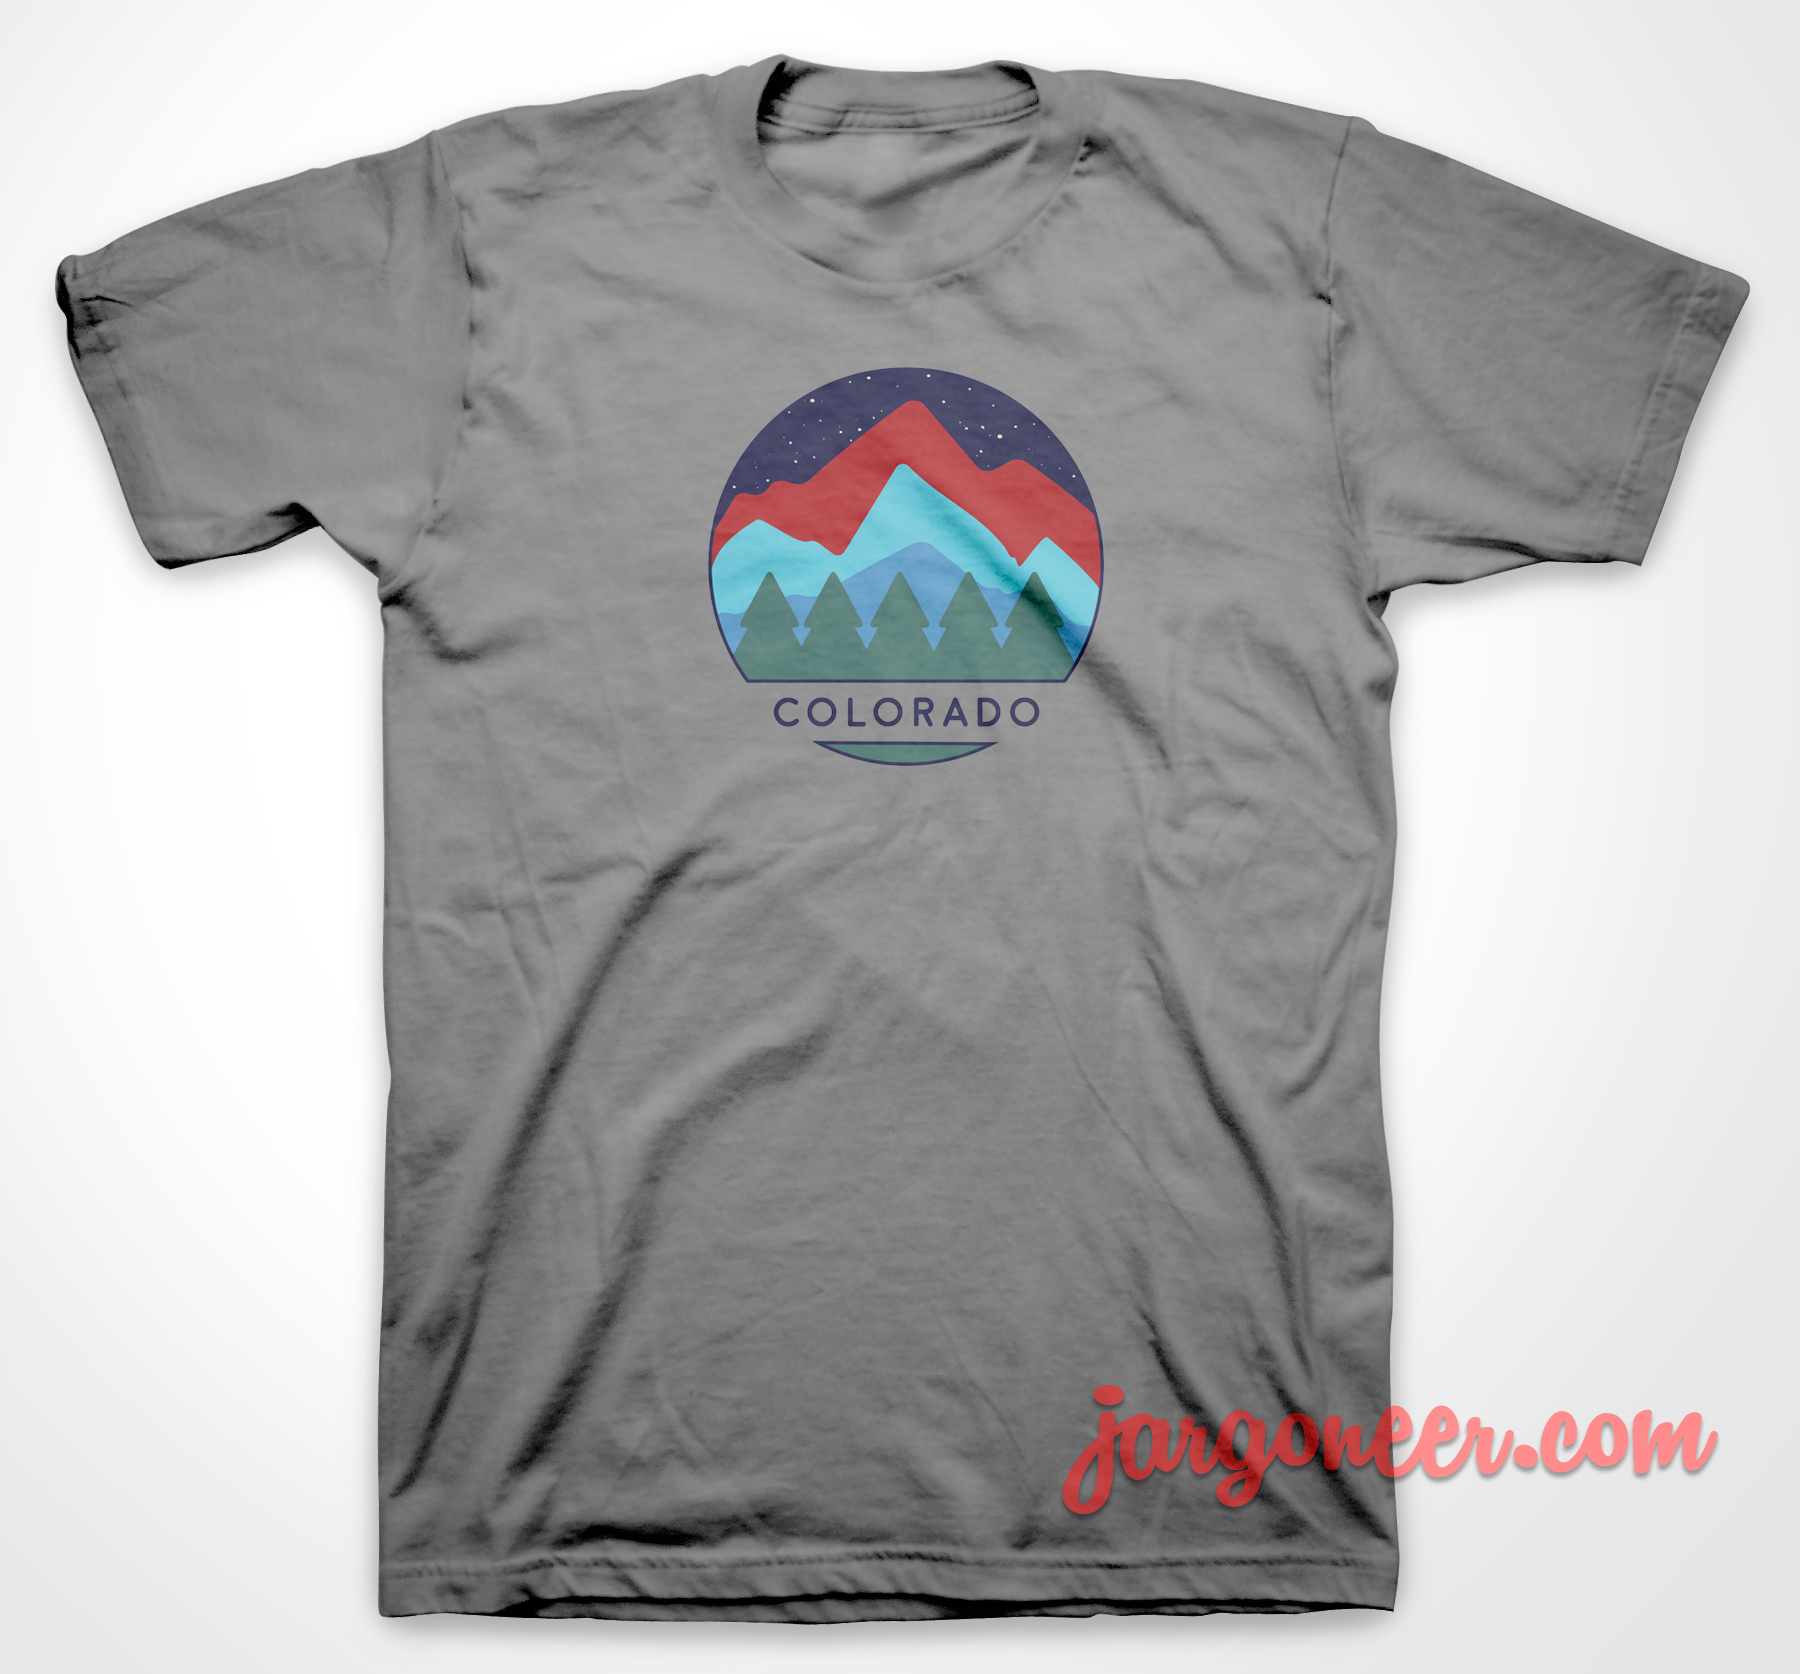 Colorado View 3 - Shop Unique Graphic Cool Shirt Designs